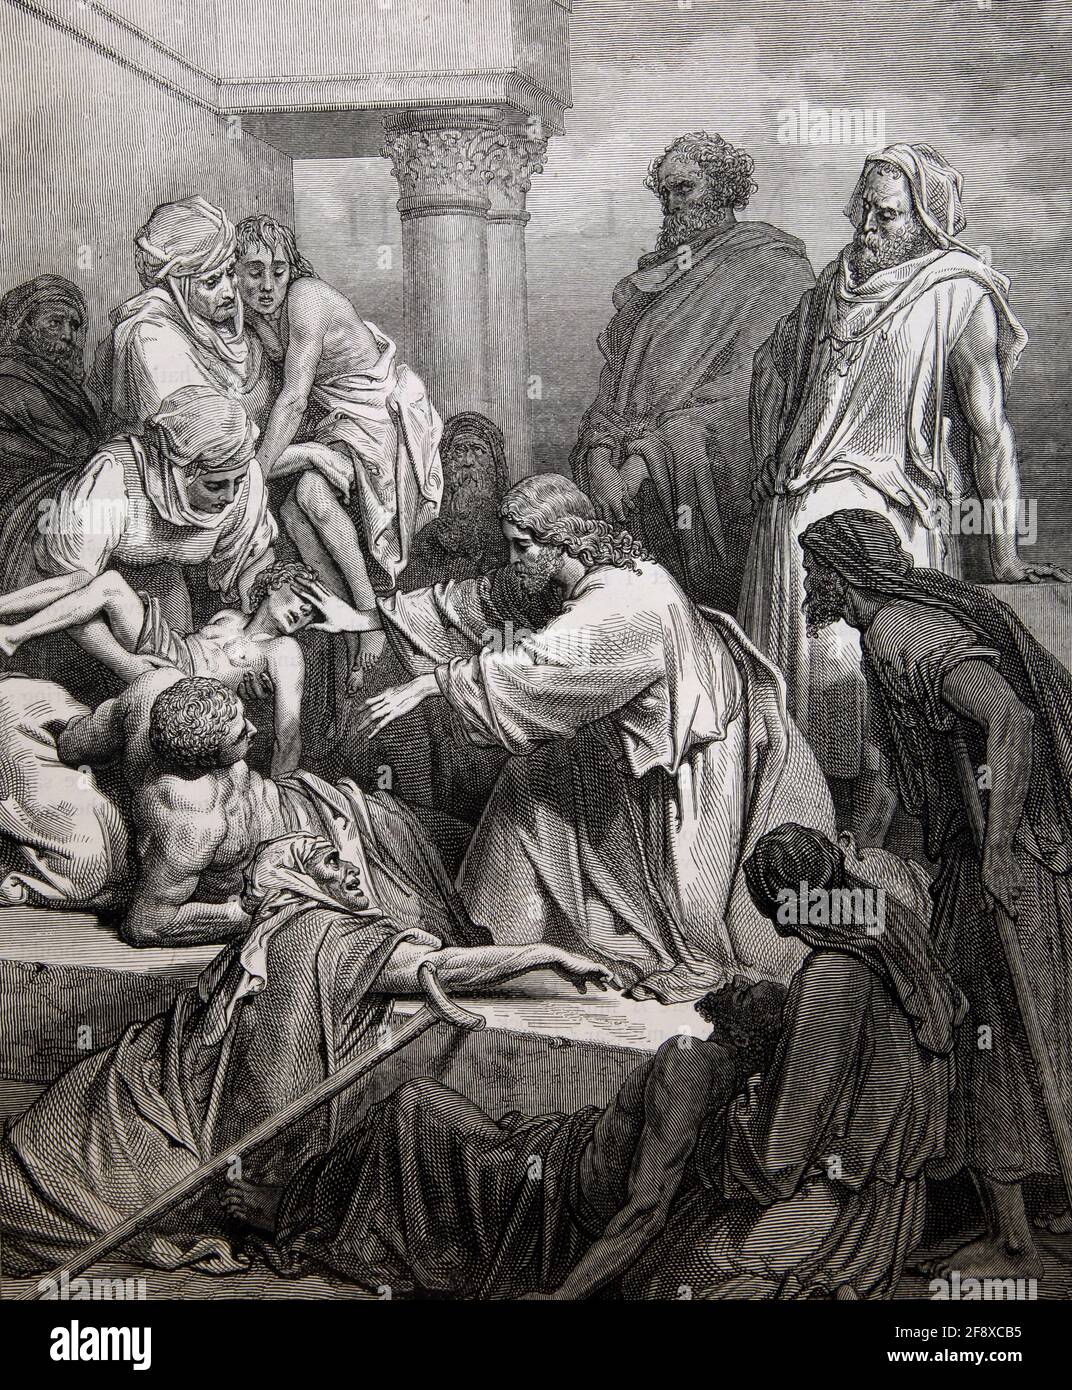 Illustrazione della storia della Bibbia Gesù guarisce i malati (Matteo 15:31) Foto Stock